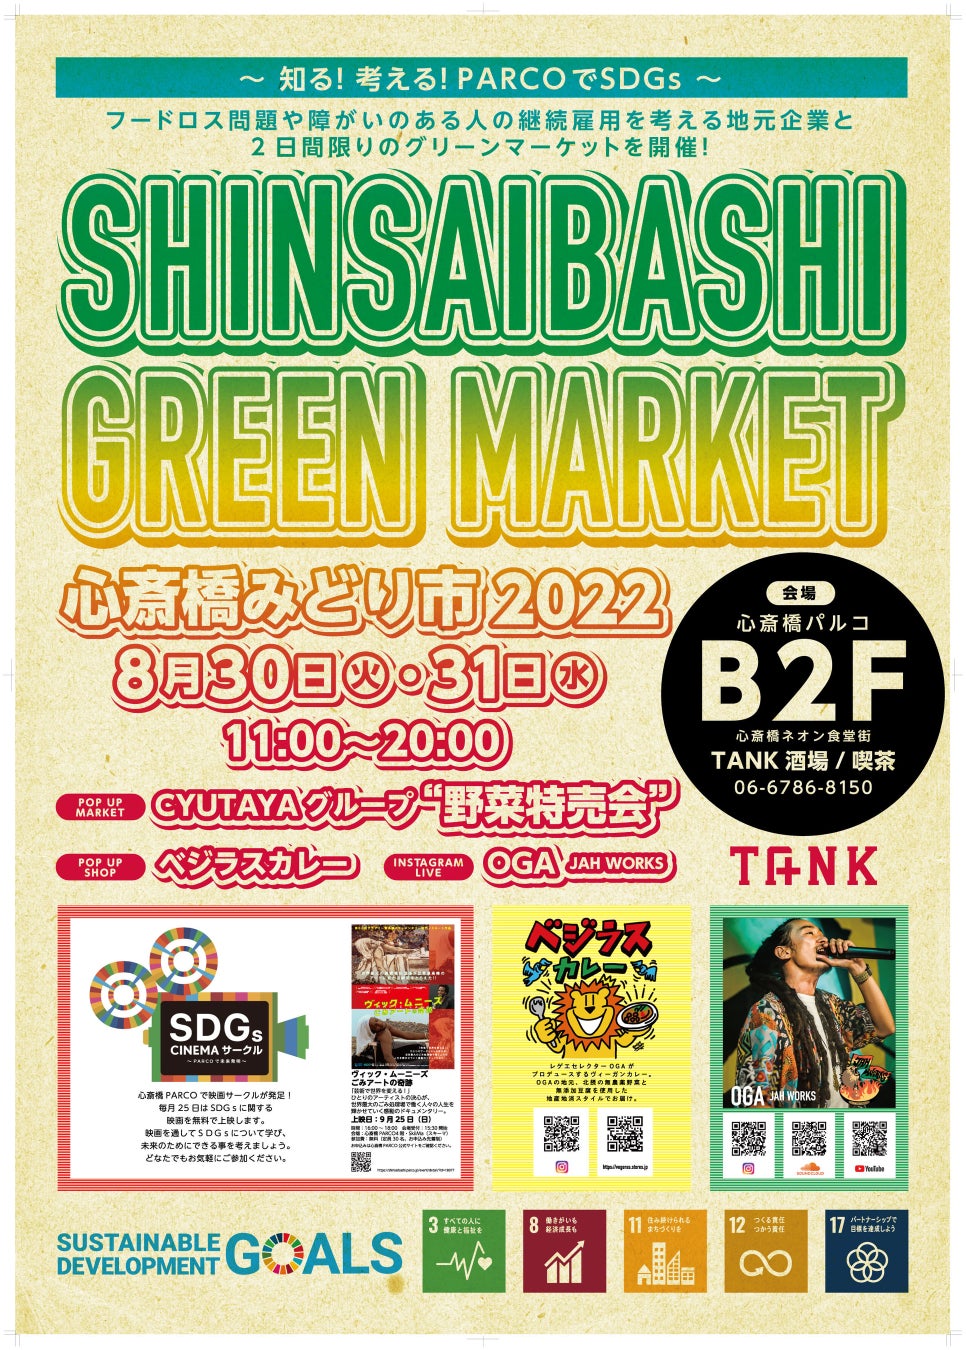 フードロス問題や障がいのある人の継続雇用を考える地元企業が2 日間限りのグリーンマーケットを開催！SHINSAIBASHI GREEN MARKET 8 月30 日・31 日開催！のサブ画像1